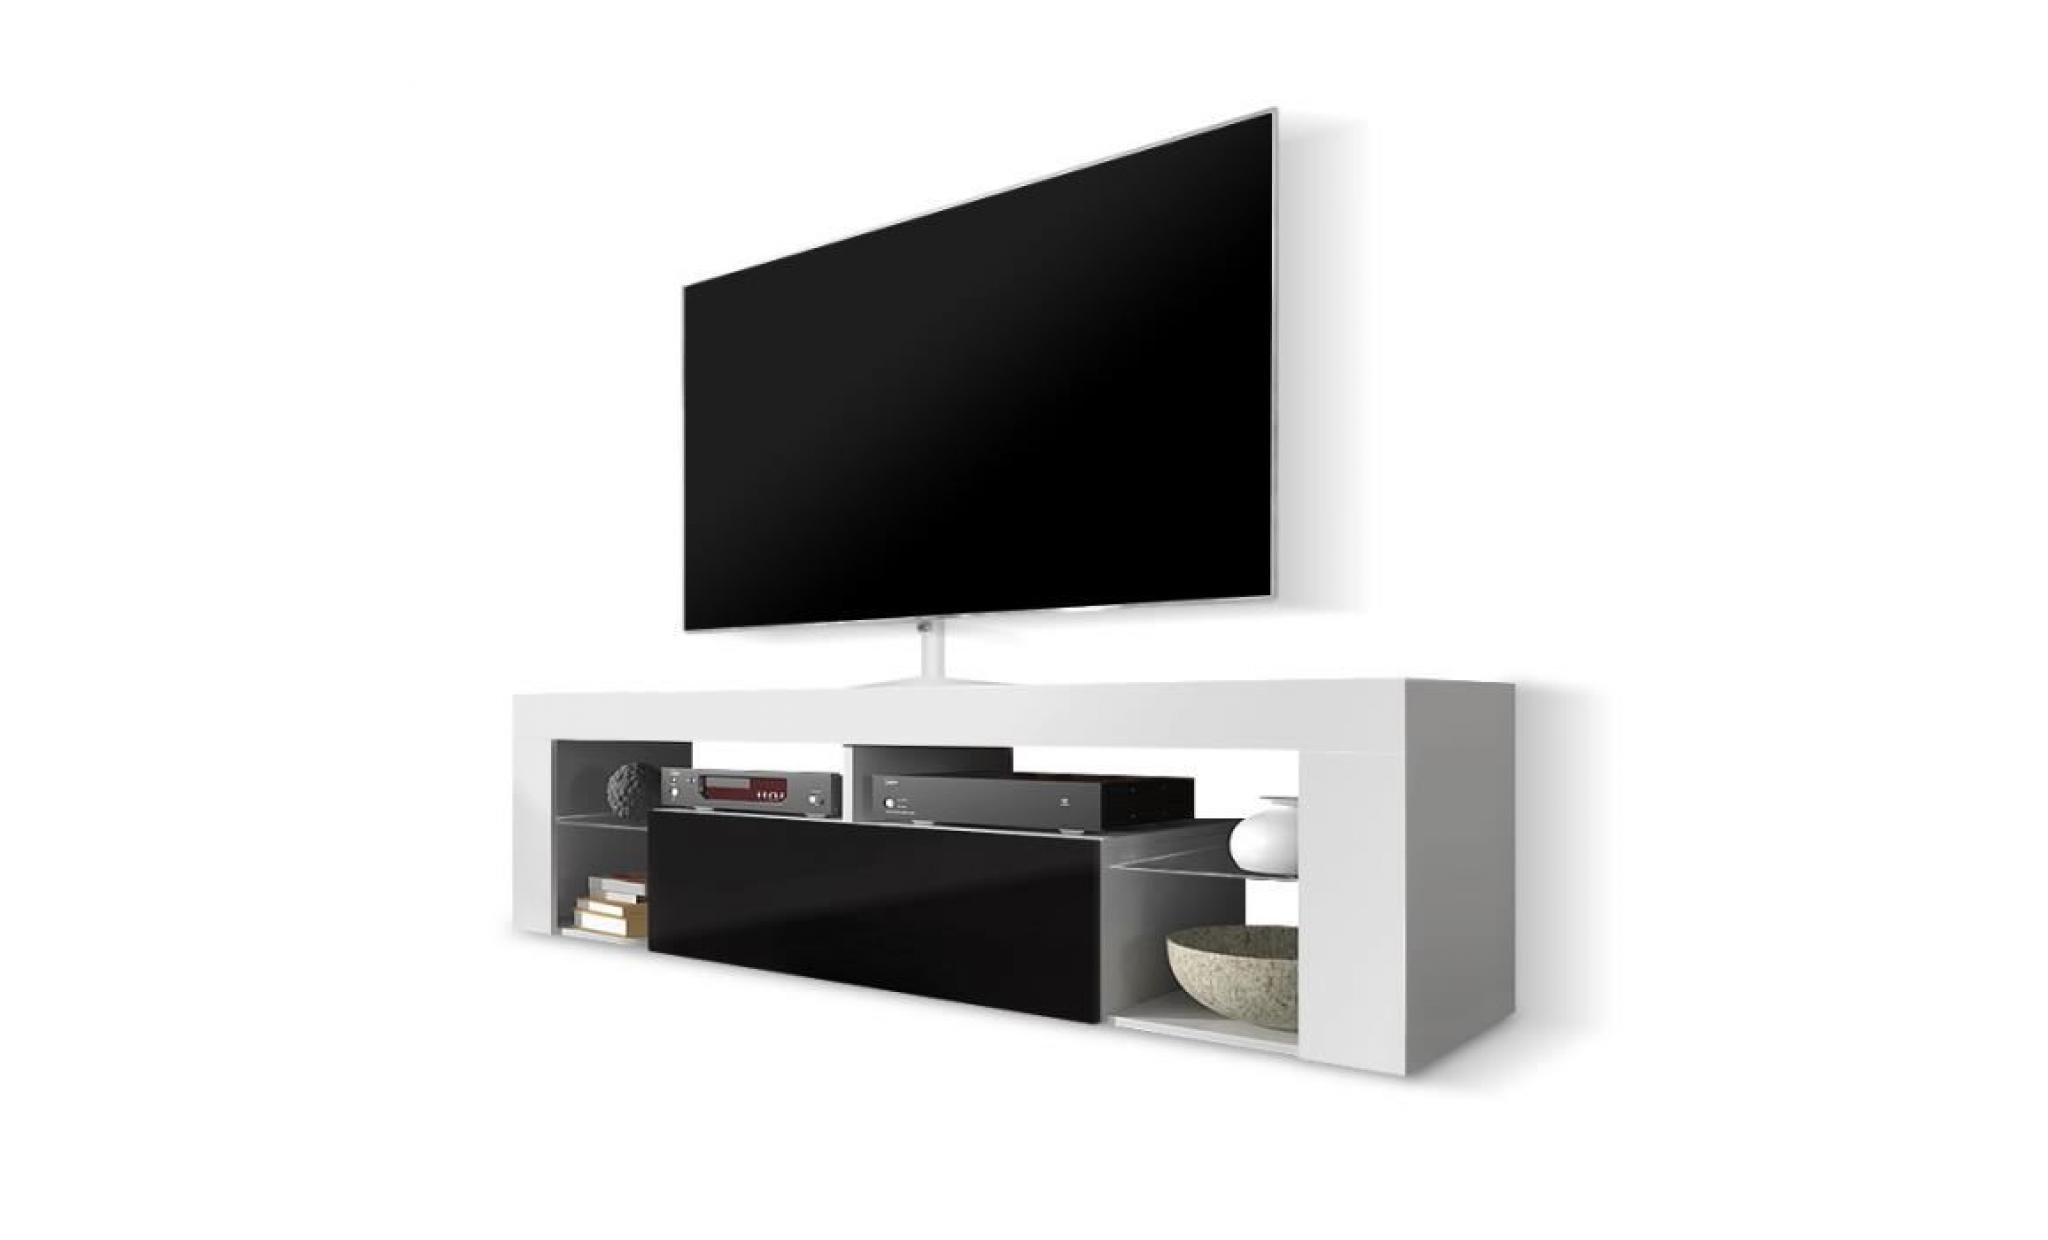 meuble tv / meuble de salon   hugo   140 cm   blanc mat / noir brillant   sans led   style moderne   tablette en verre pas cher